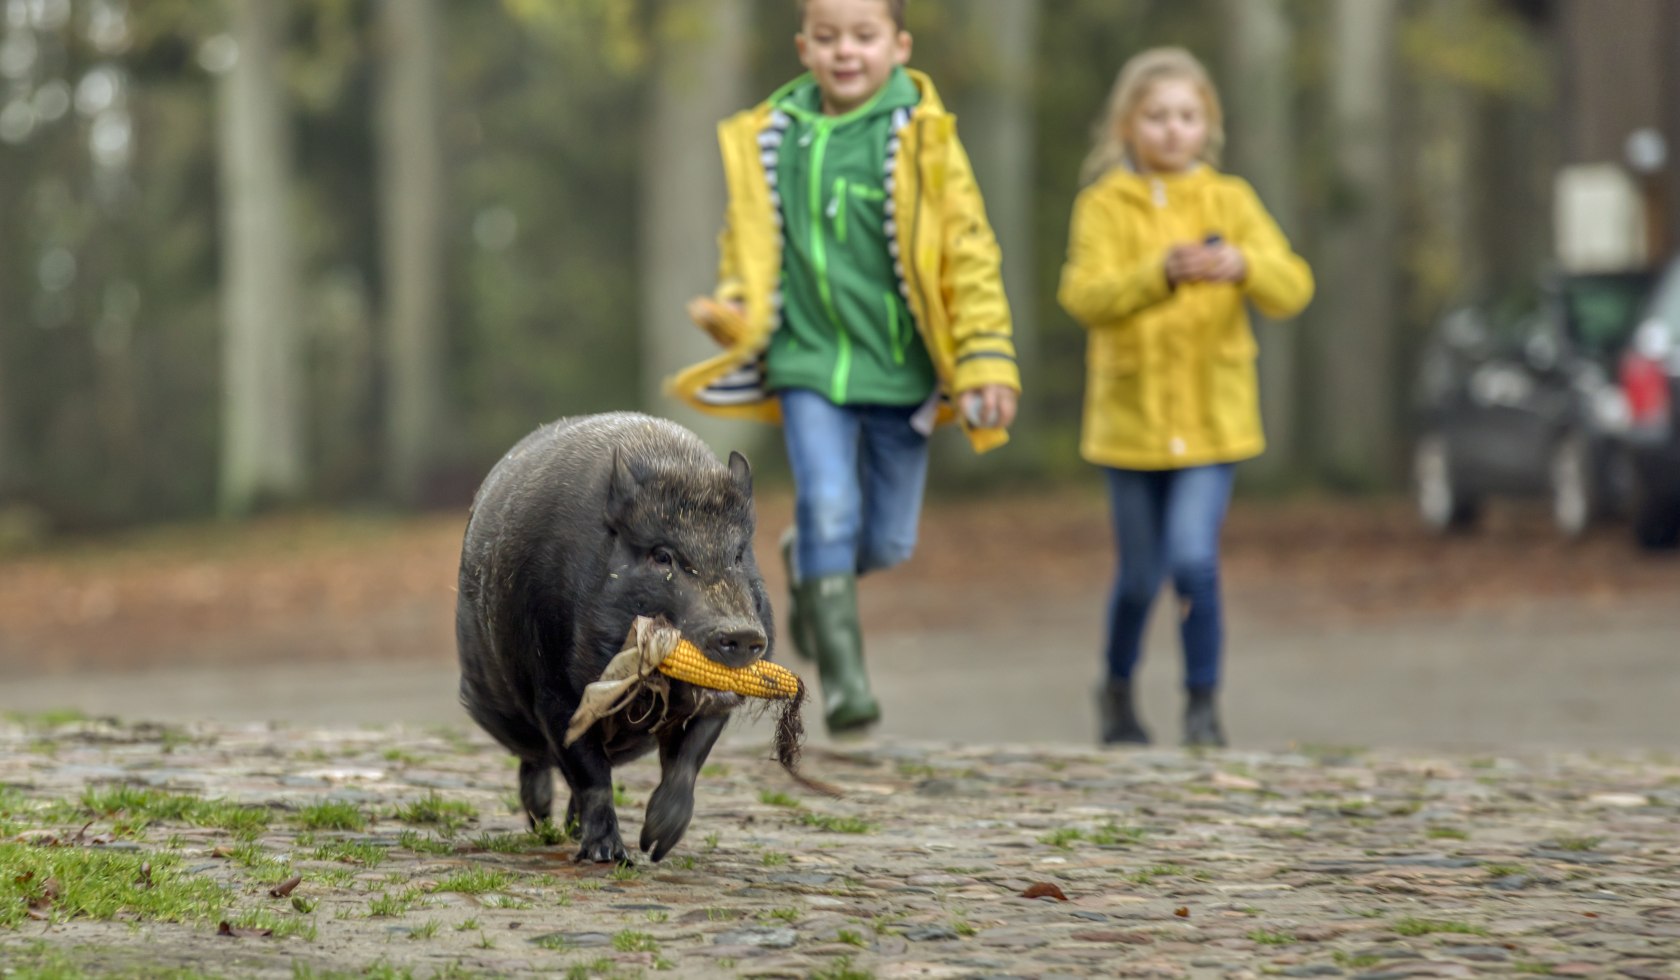 Schwein mit Rübe im Maul rennt über Hof gefolgt von lachenden Kindern, © Christian Bierwagen